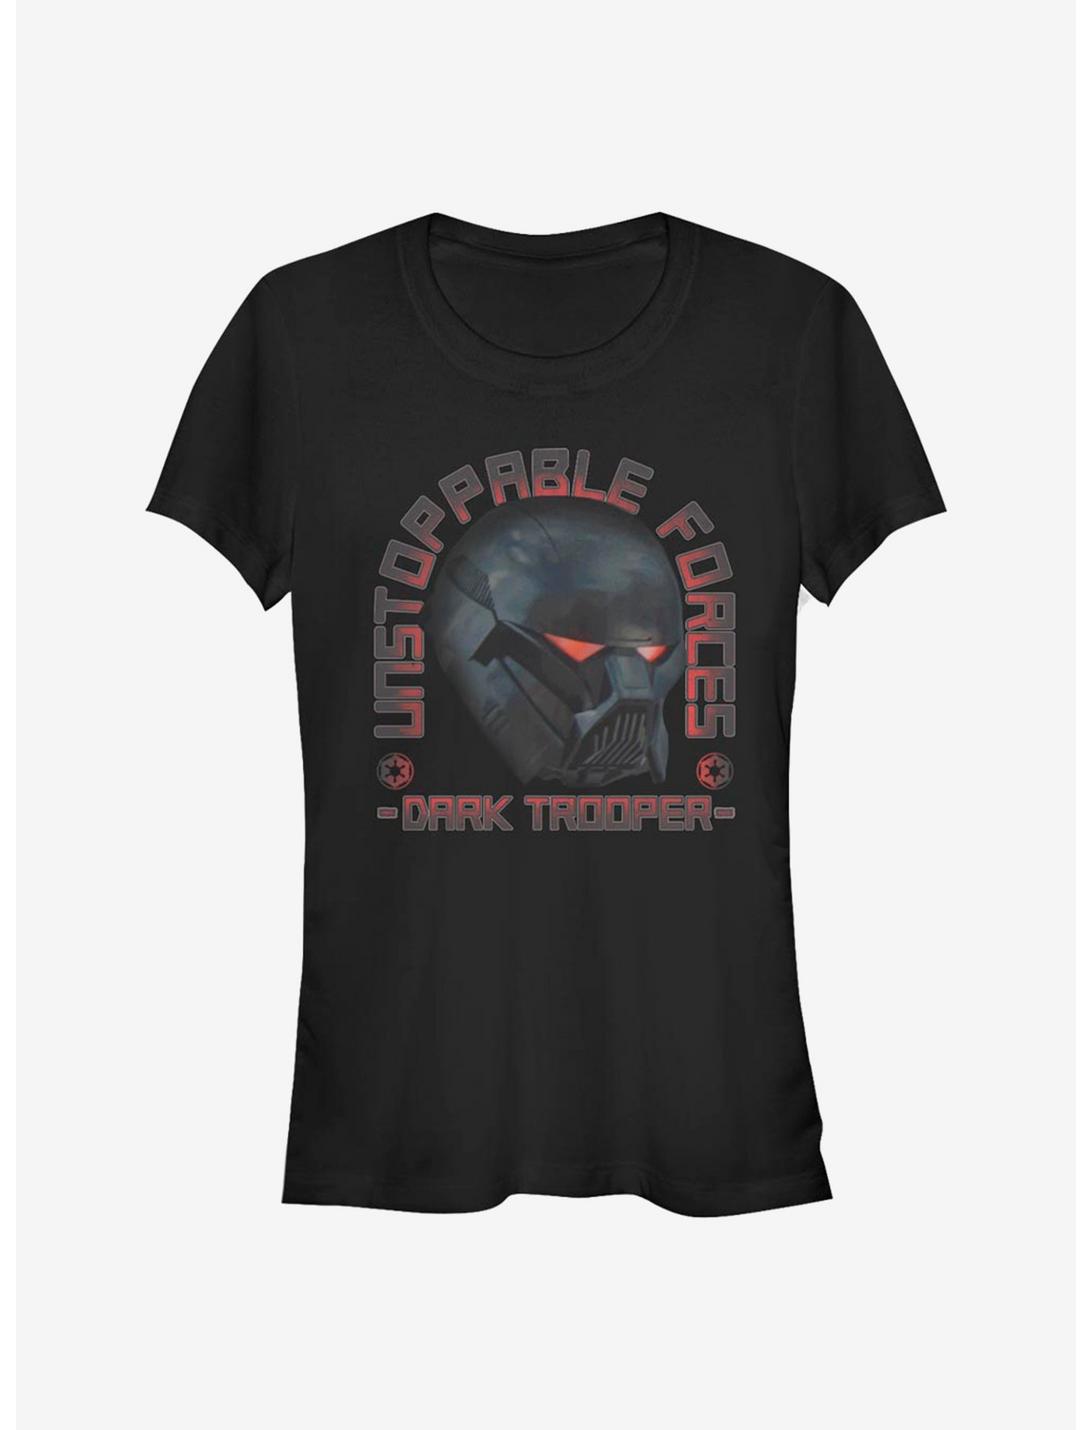 Star Wars The Mandalorian Dark Trooper Girls T-Shirt, BLACK, hi-res